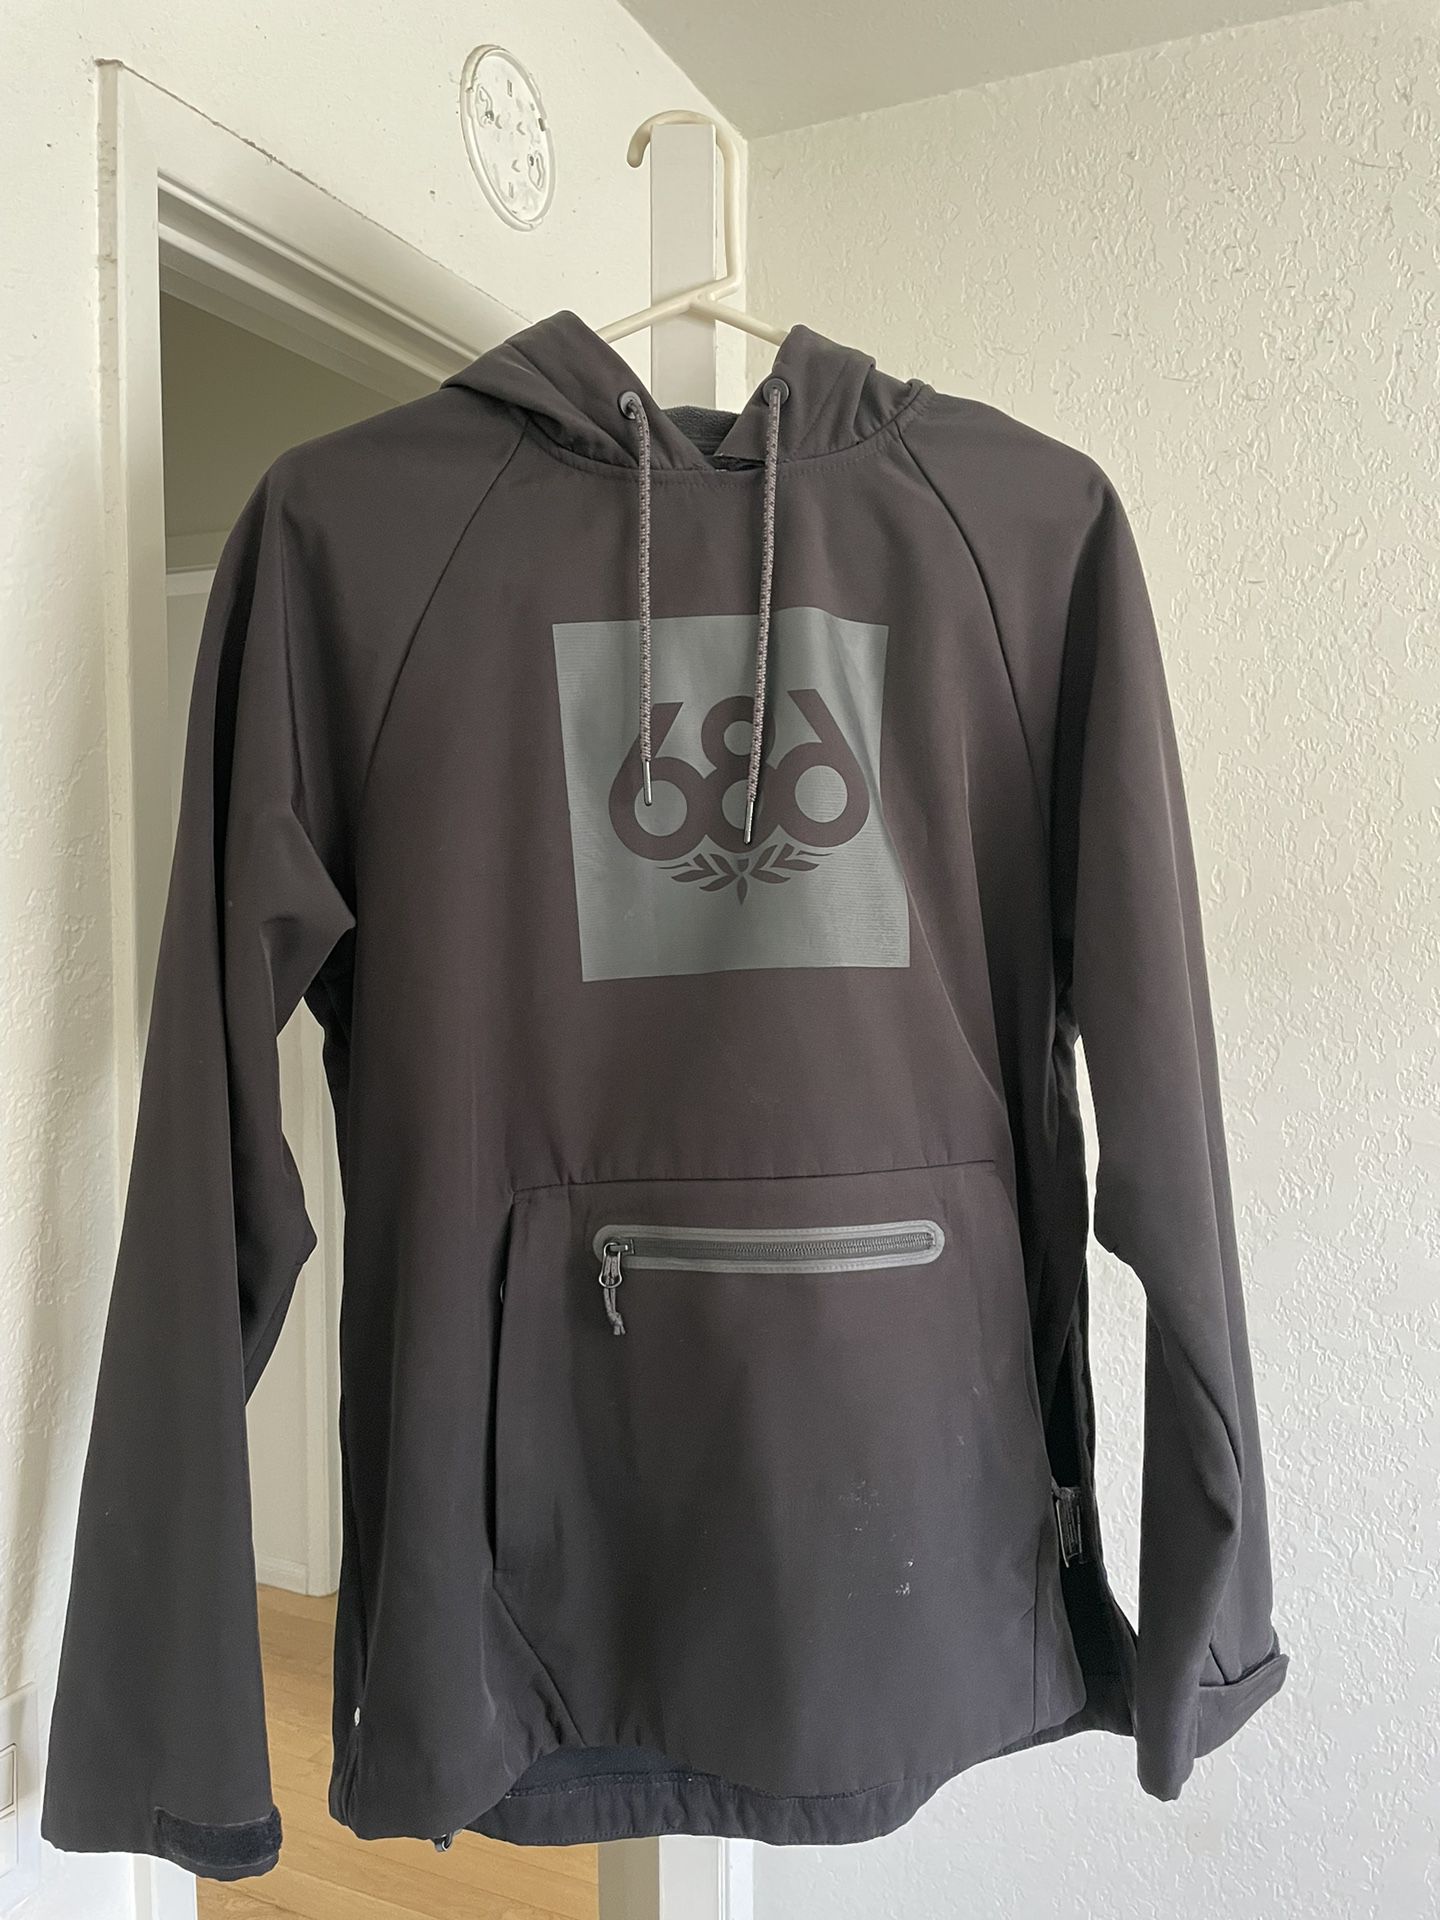 686 Waterproof Hoodie/jacket